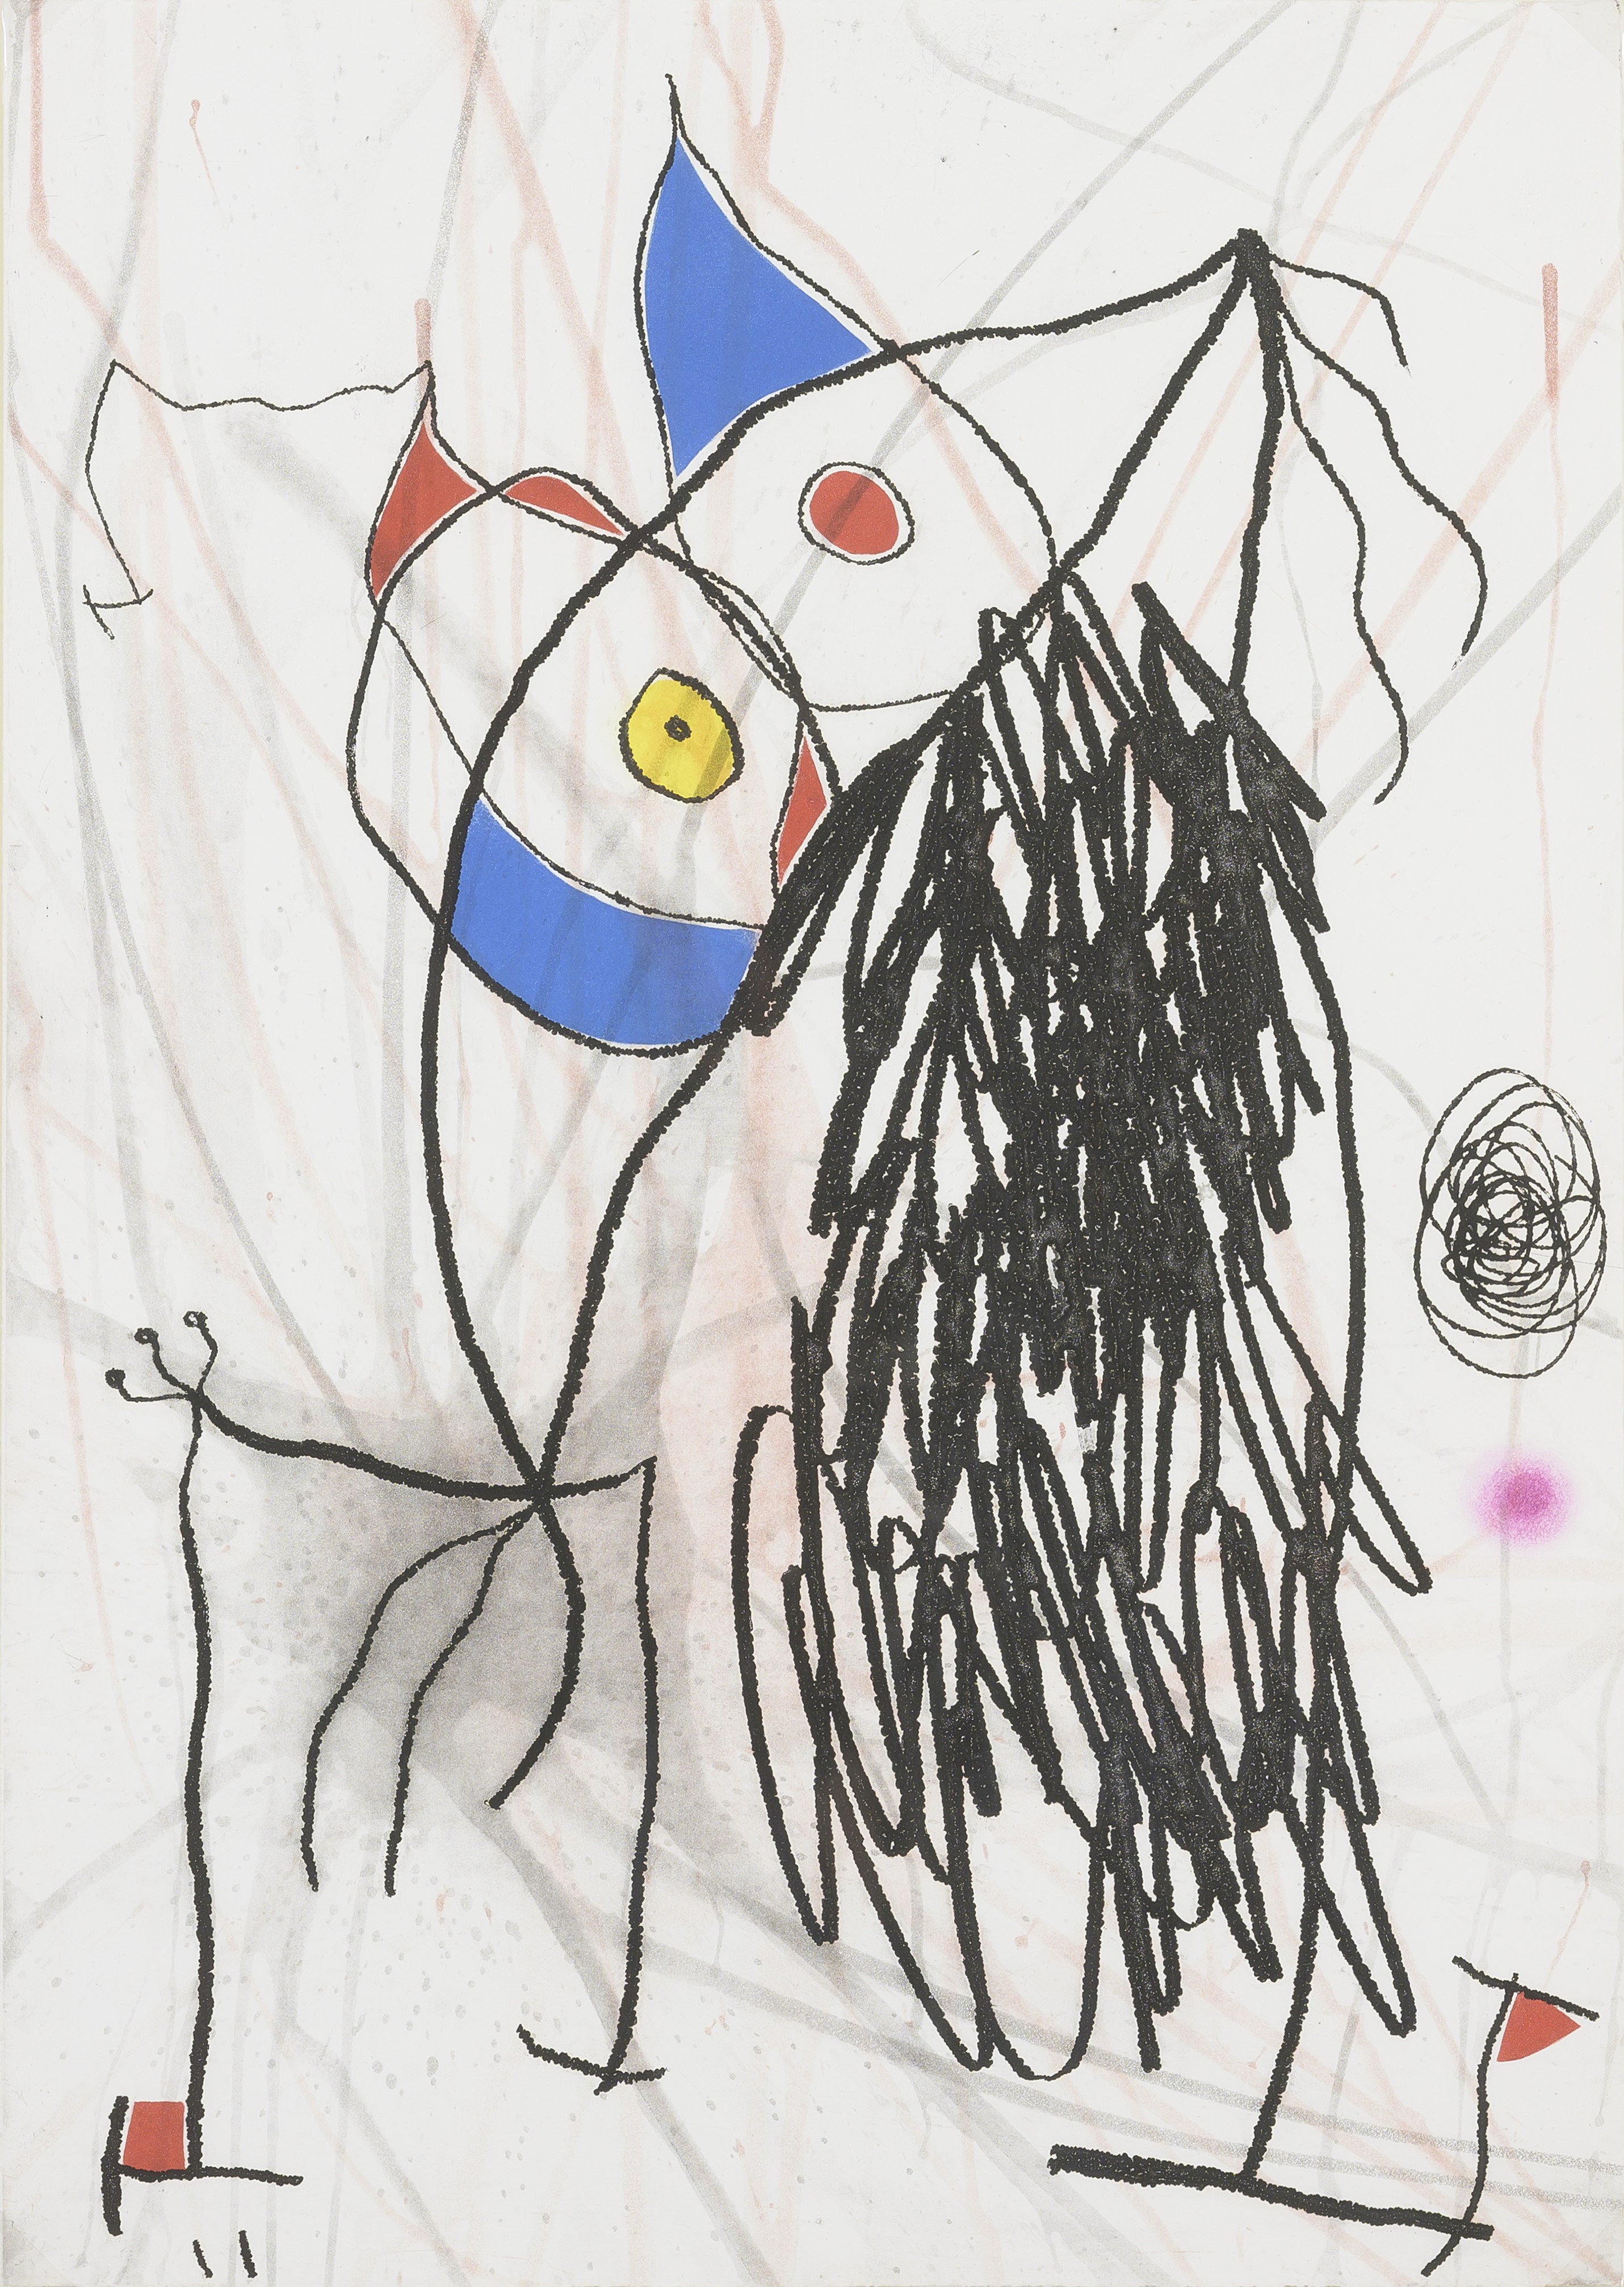  Geist, Gespenst oder Monster? In den Bildern von Miró lassen sich auch skurrile Figuren entdecken, Joan Miró, Blatt aus "Passage de L'Égyptienne", copyright VG Bild-Kunst, Bonn 2022 